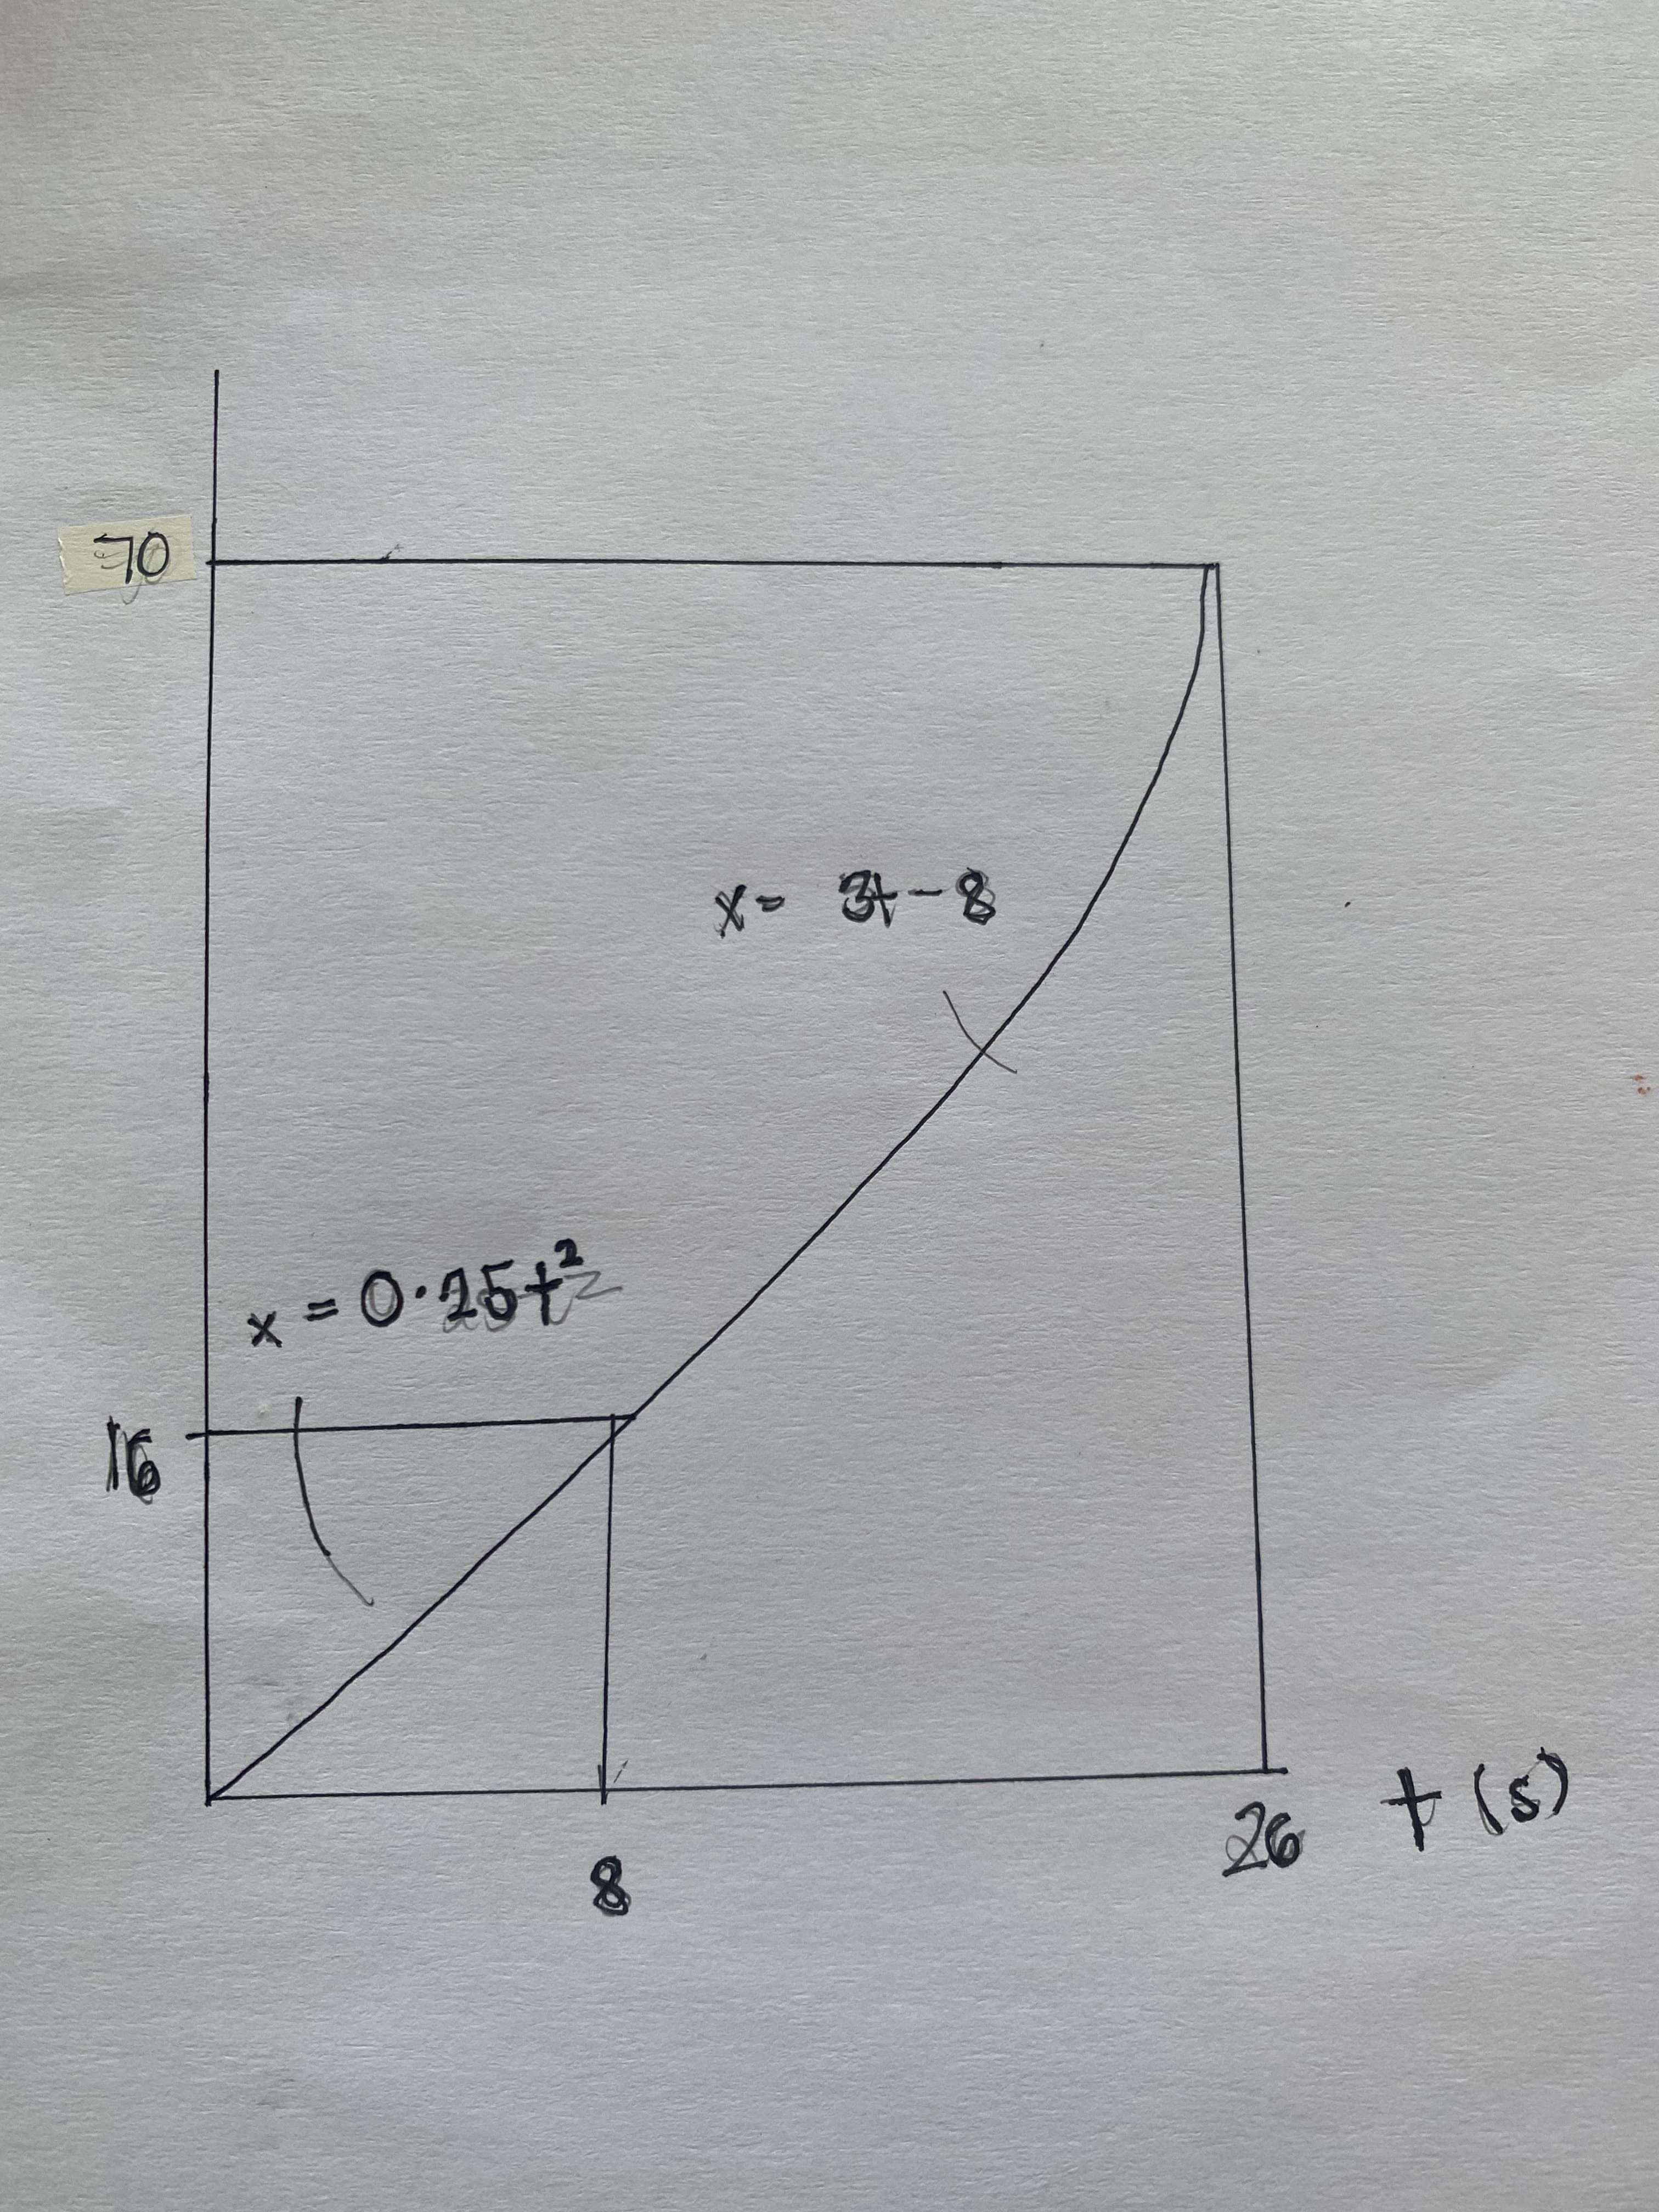 (s) 4 %
x = 0•25+
8-42 -X
